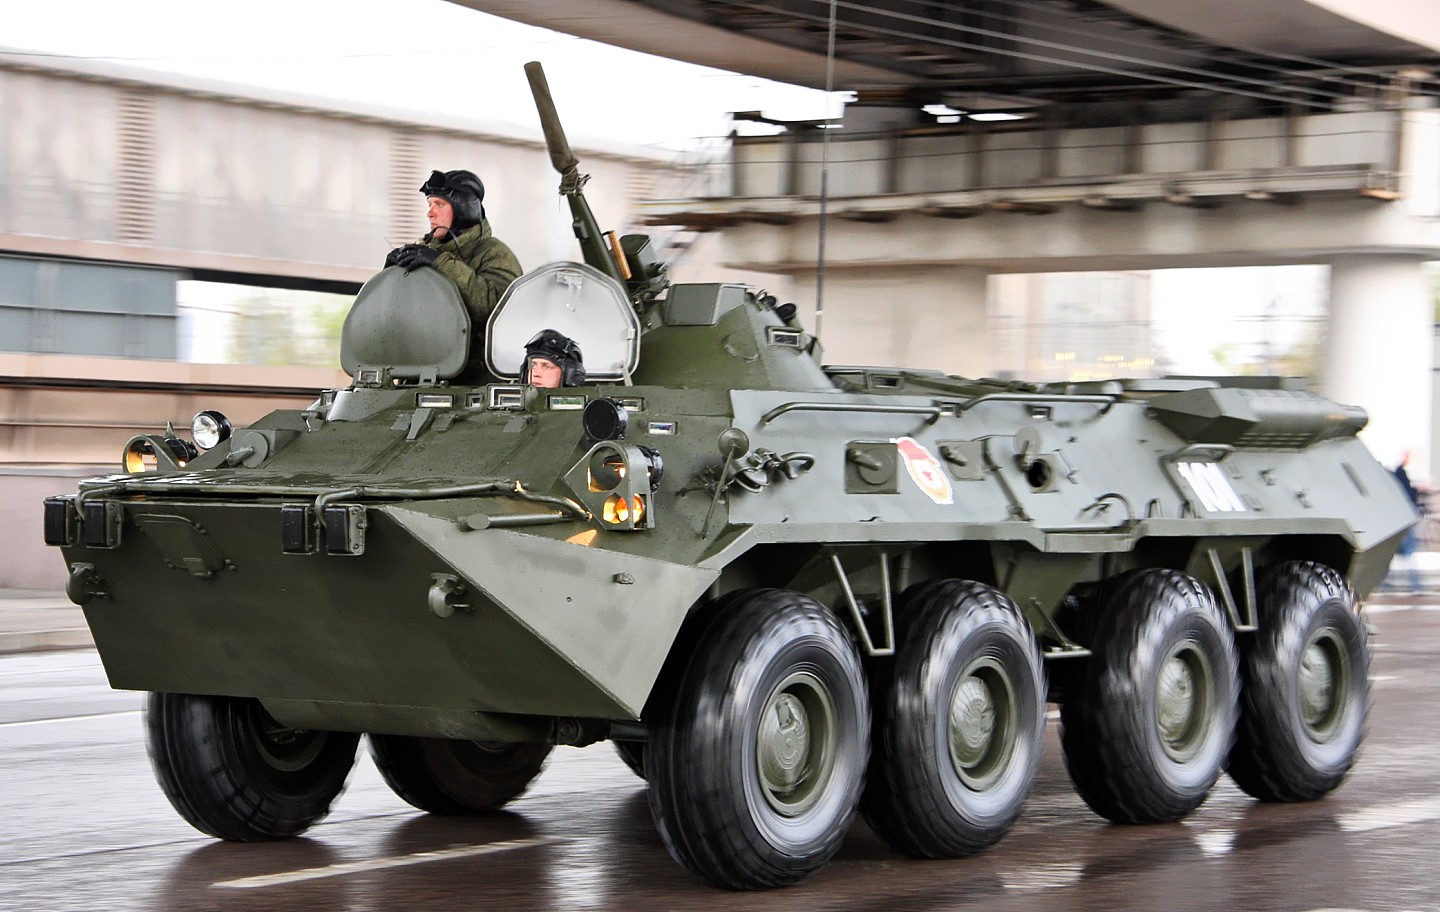 欧美军援乌克兰到底有没有用？以反装甲武器为主，但运输正面临各种障碍